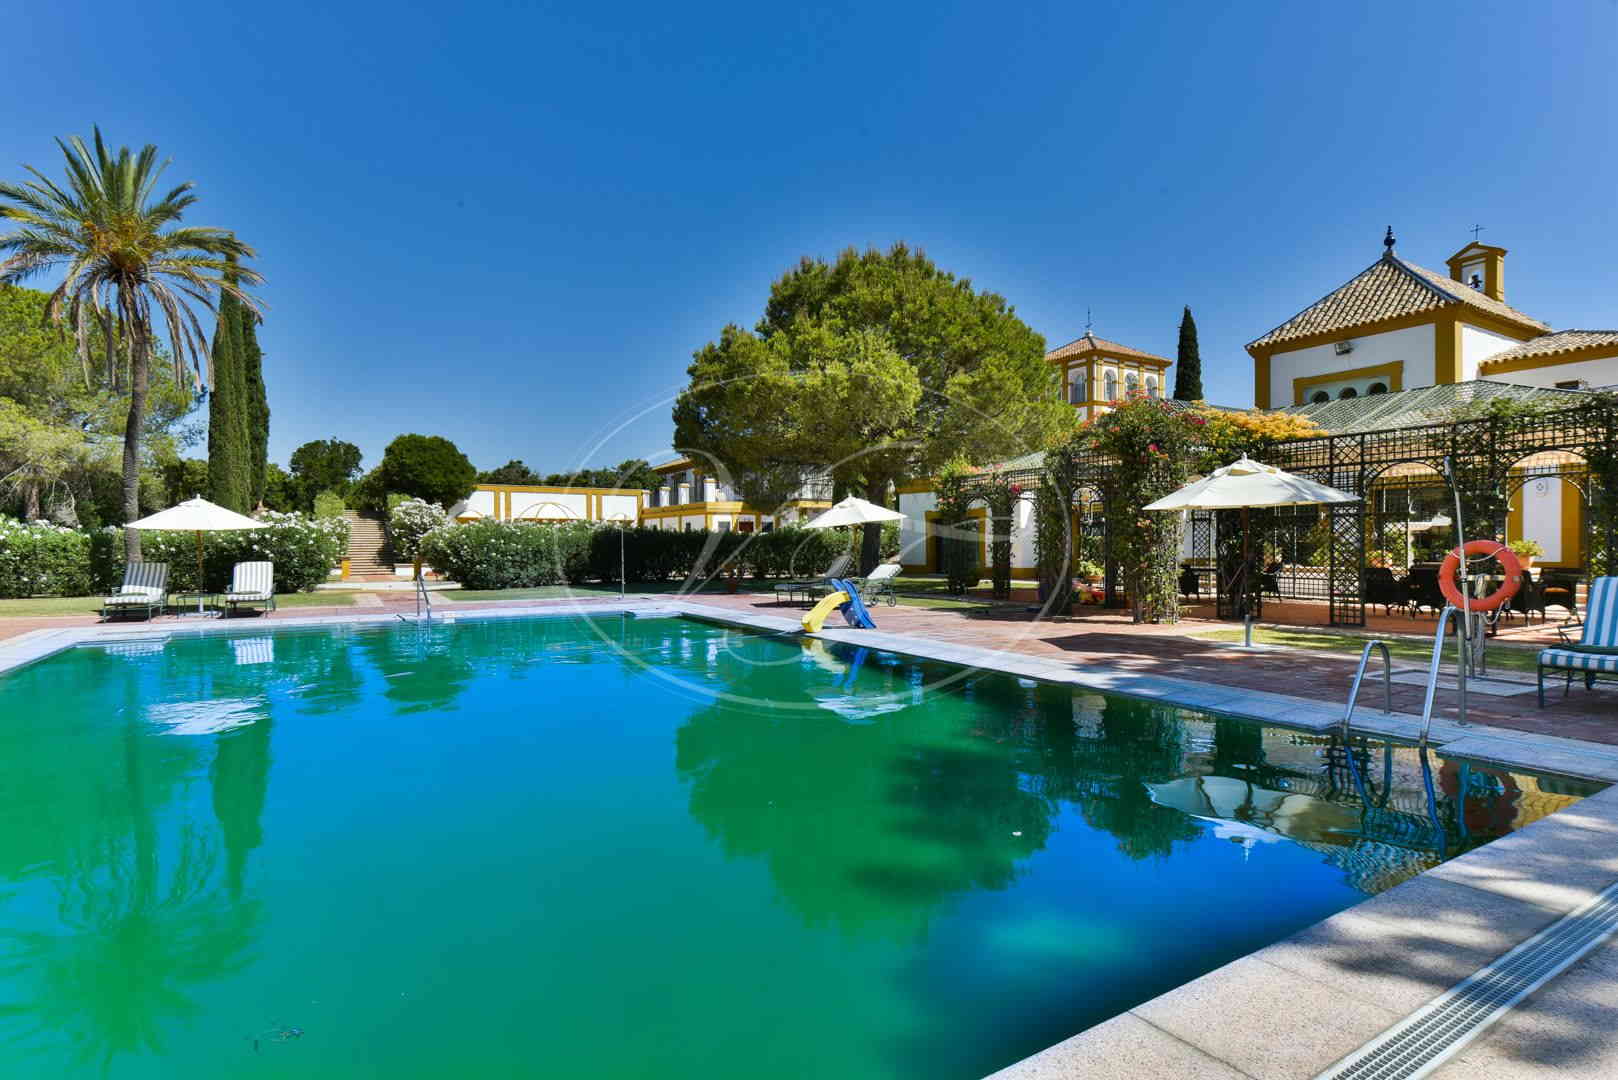 Palatial Estate for sale Seville Spain Villas and Fincas 1